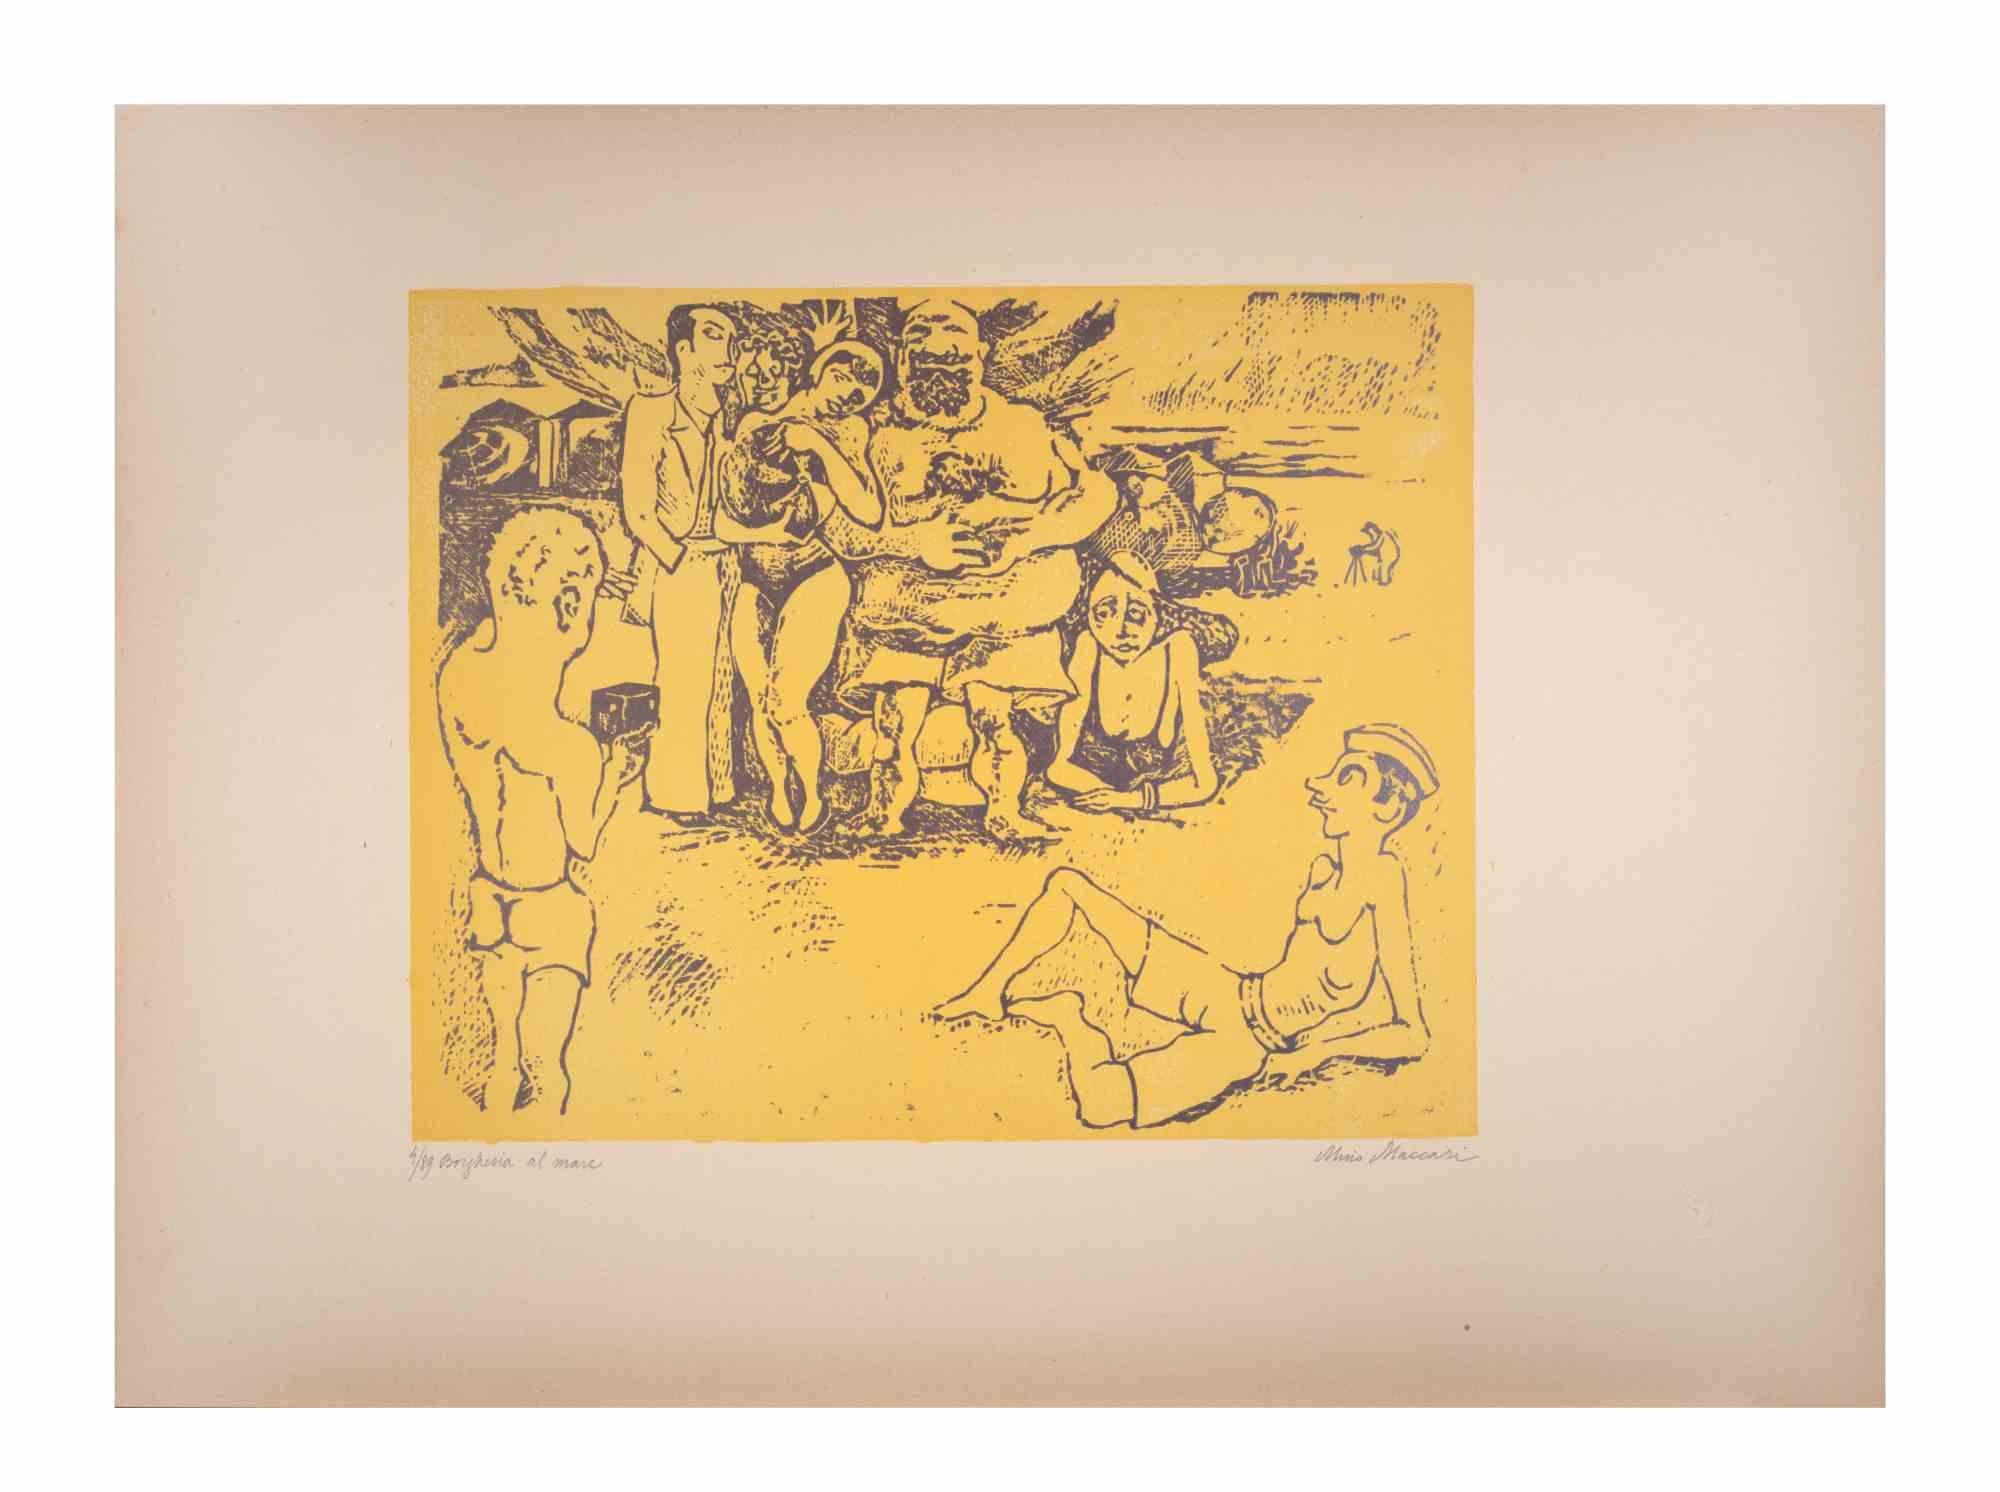 Die Bourgeoisie auf See ist ein Kunstwerk von Mino Maccari (1924-1989) aus der Mitte des 20. Jahrhunderts.

Farbiger Holzschnitt auf Papier. Unten handsigniert, nummeriert 4/89 Exemplare und am linken Rand betitelt.

Gute Bedingungen.

Mino Maccari